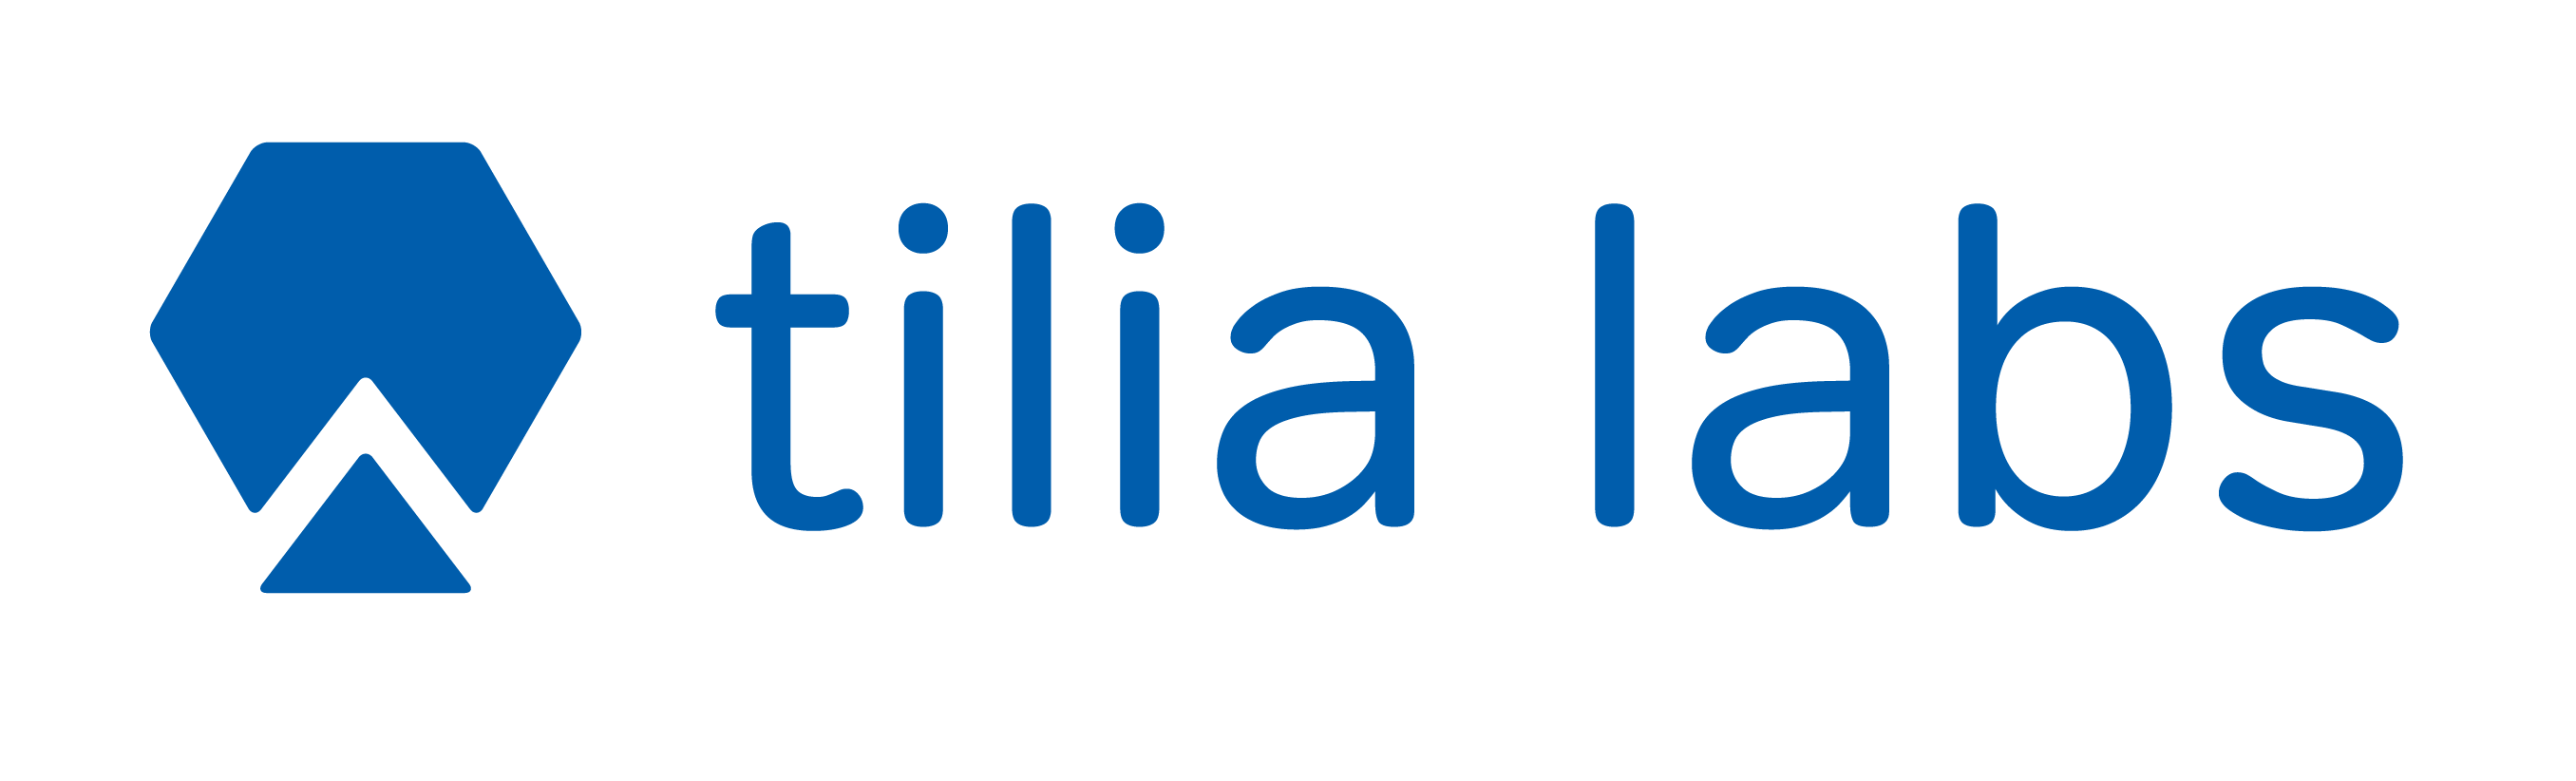 Tilia Labs logo